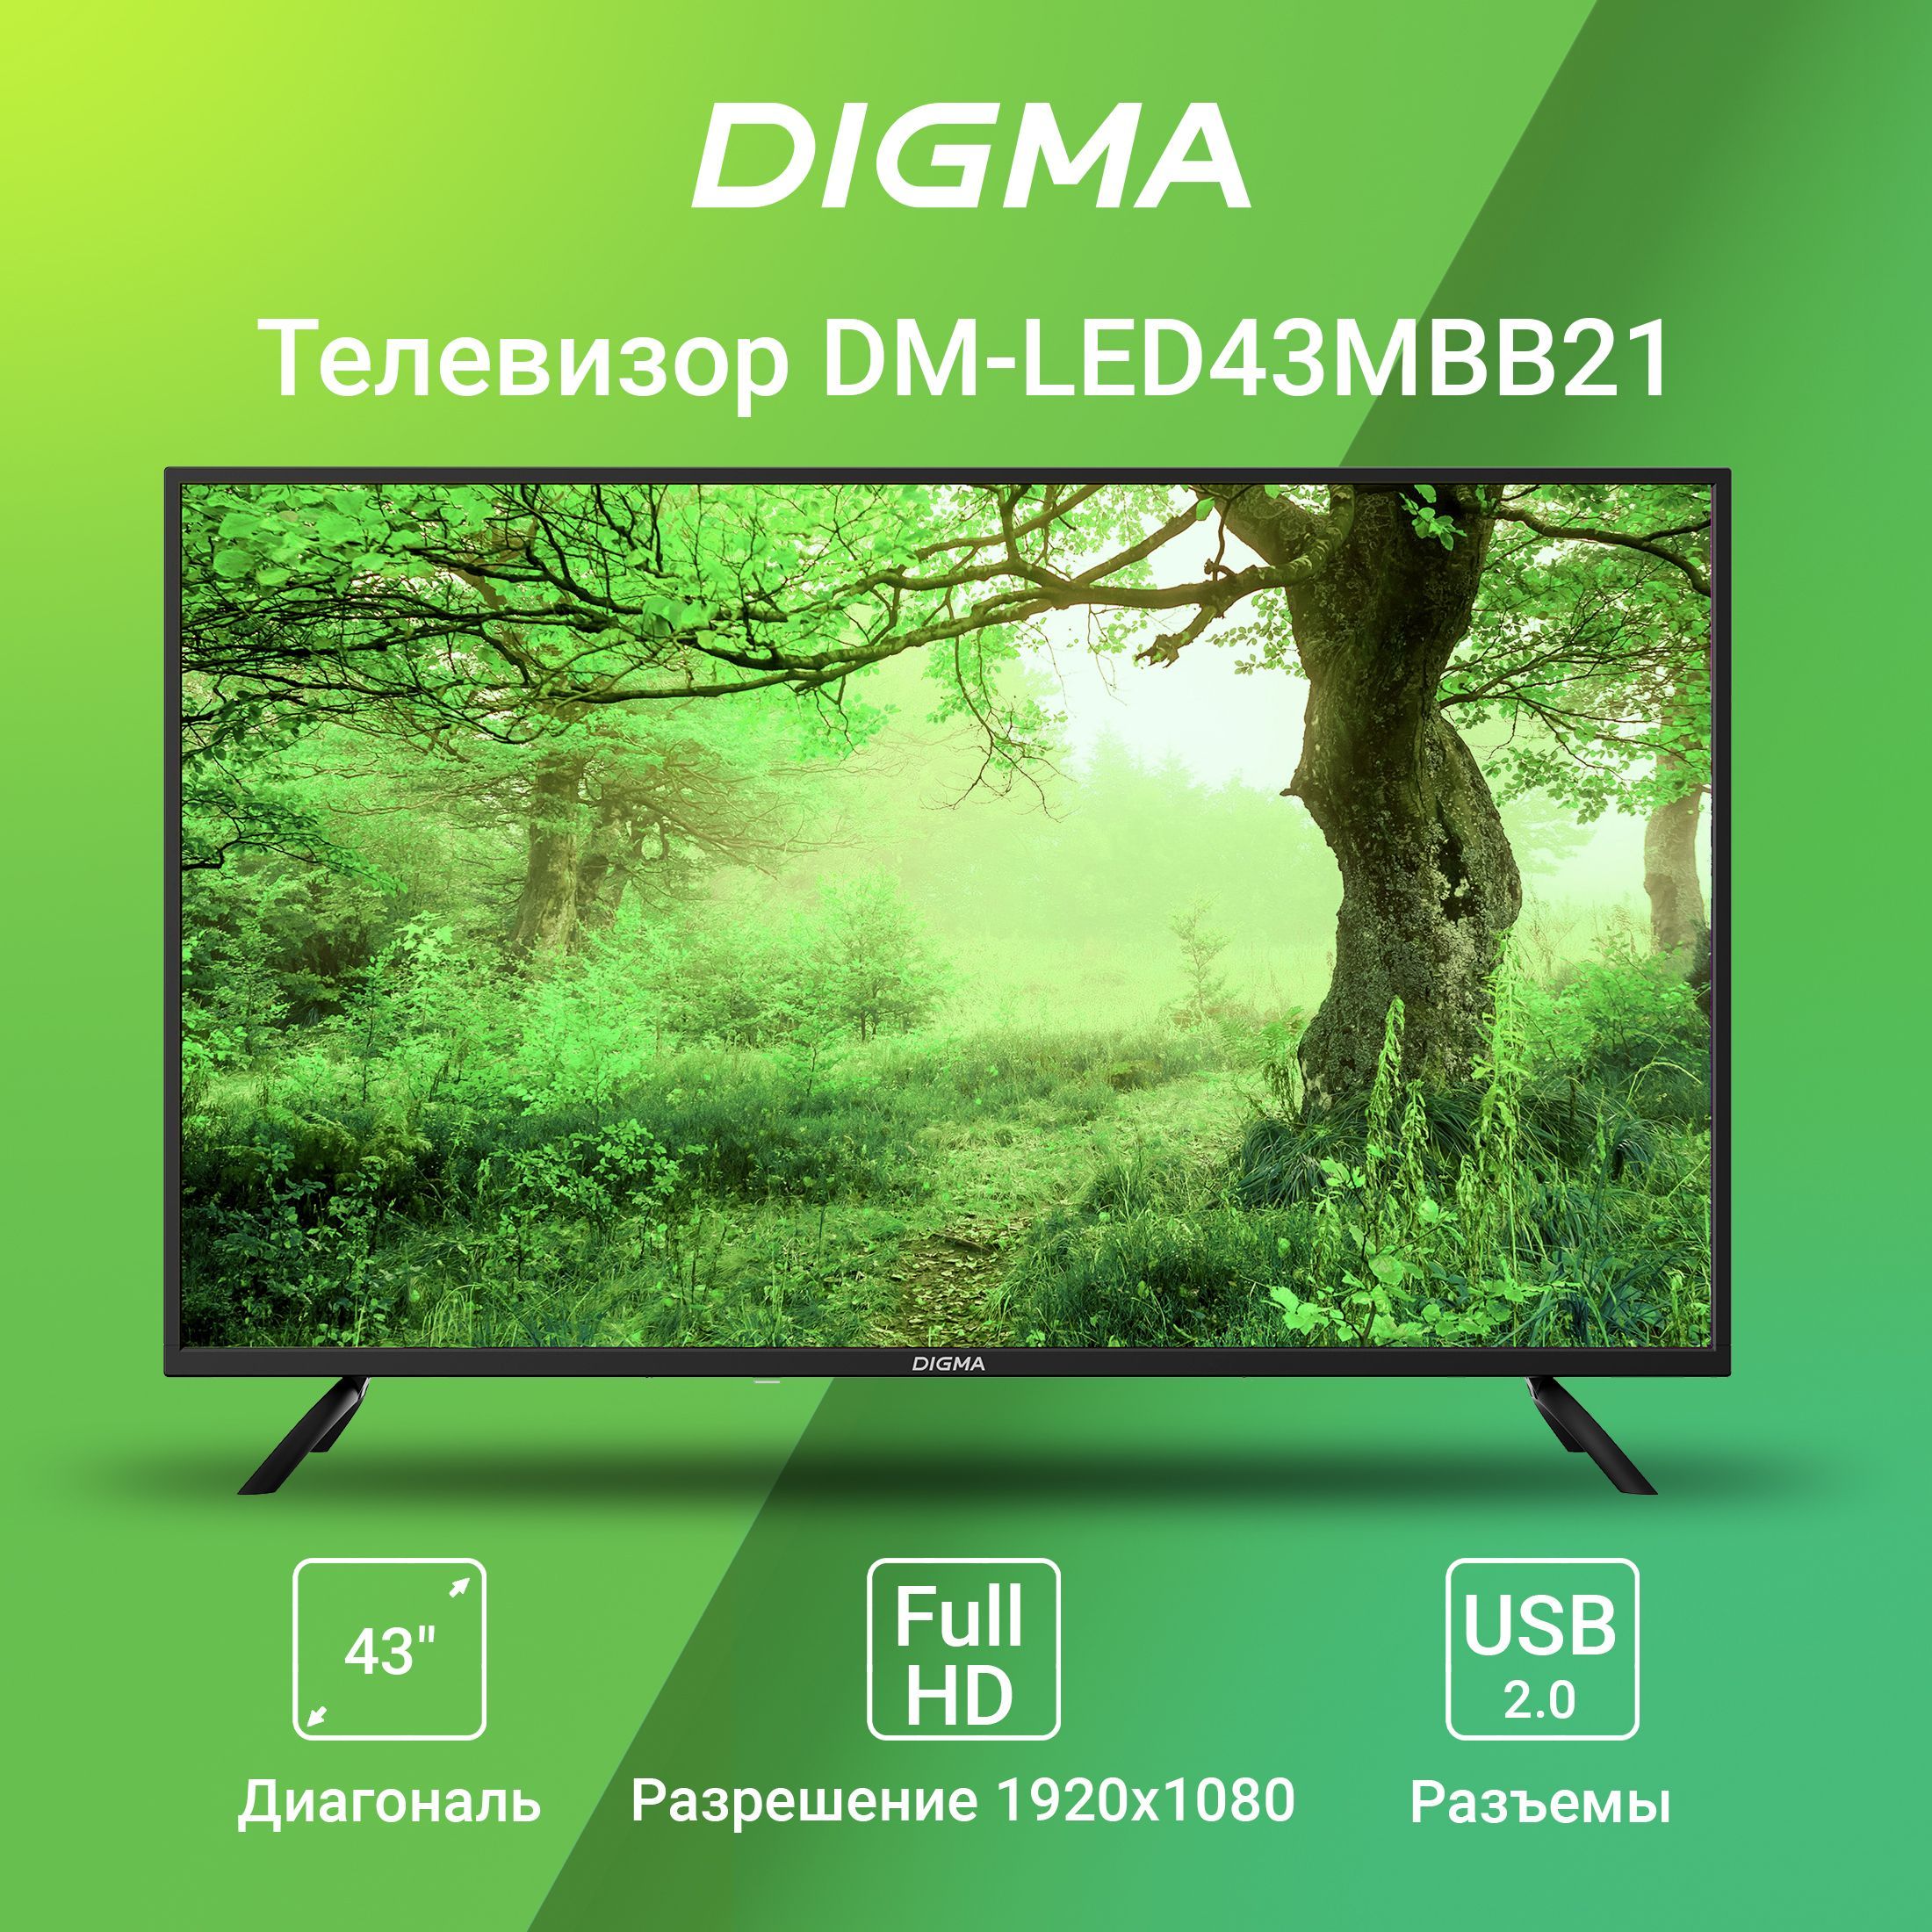 Телевизор Дигма 43. Digma телевизор DM-led43mbb21. Digma DM-led43mbb21 фото телевизора.